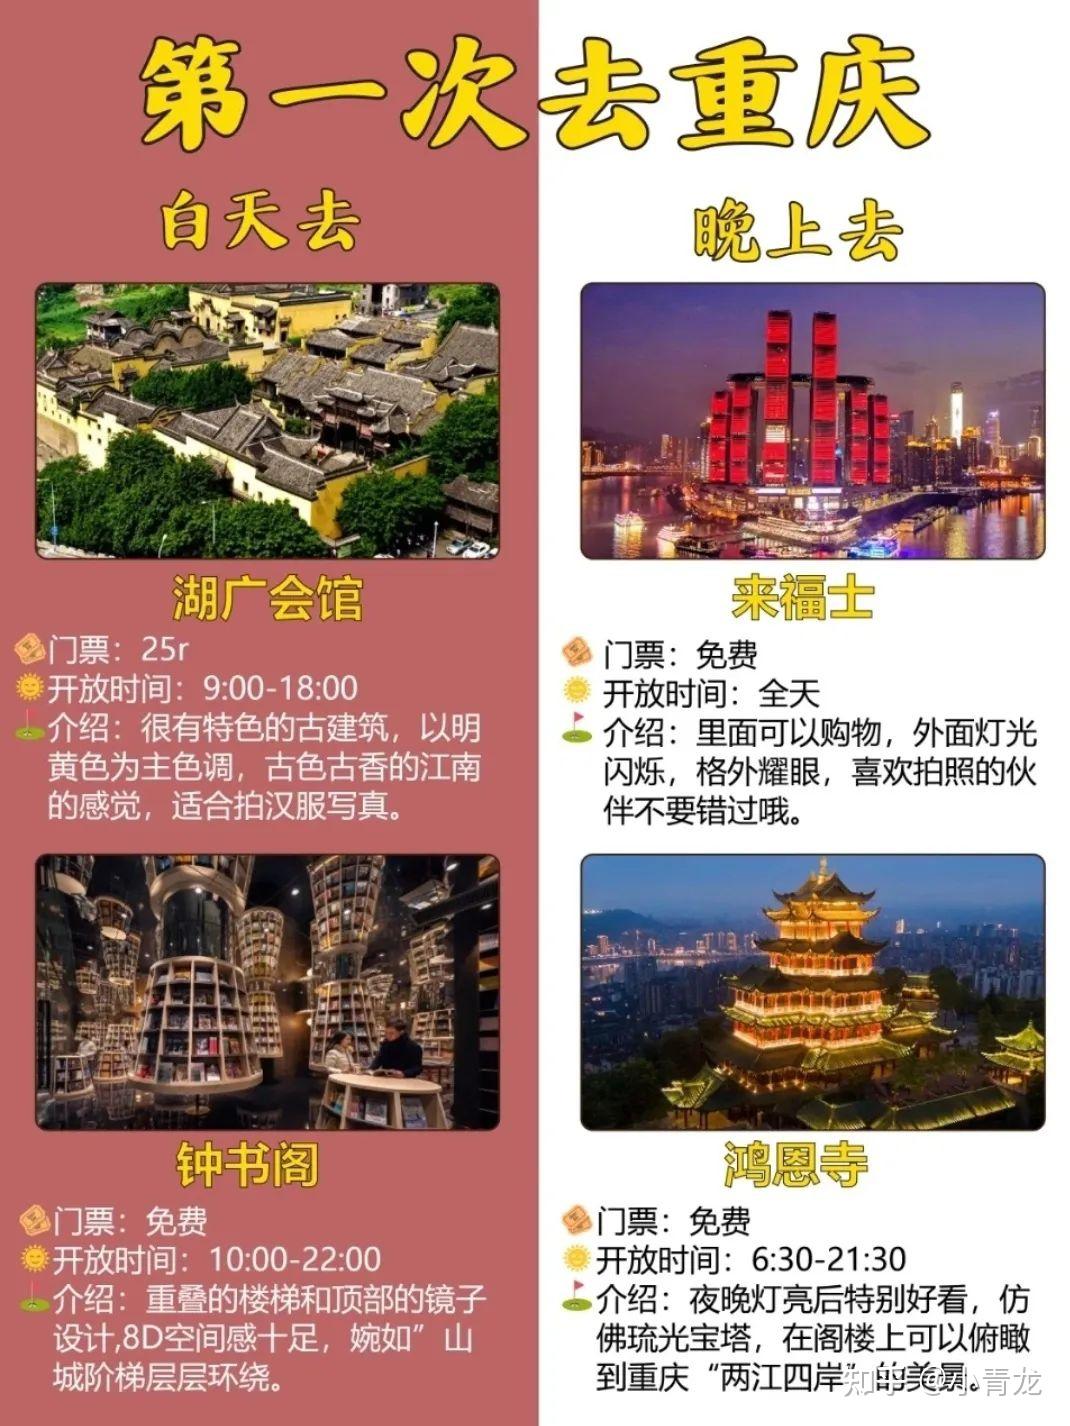 南京有哪些好玩的旅游景点 什么季节去南京玩比较好 - 旅游出行 - 教程之家